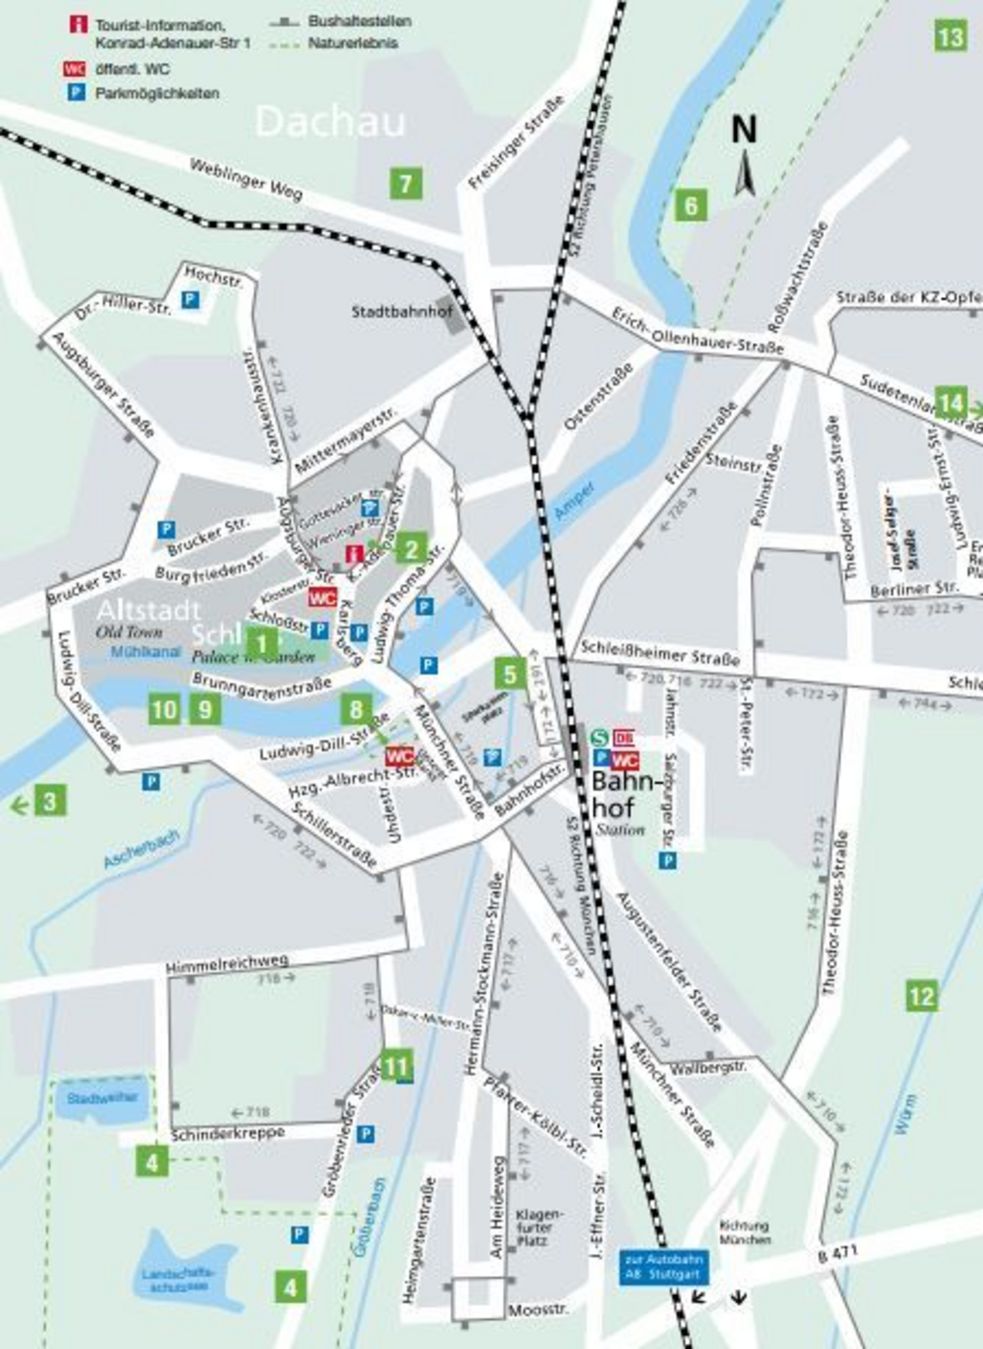 Vorschläge und Karten für Spaziergänge, Rundwege, Wanderungen und Radtouren in Dachau und dem Umland finden Sie in der städtischen Tourist-Information